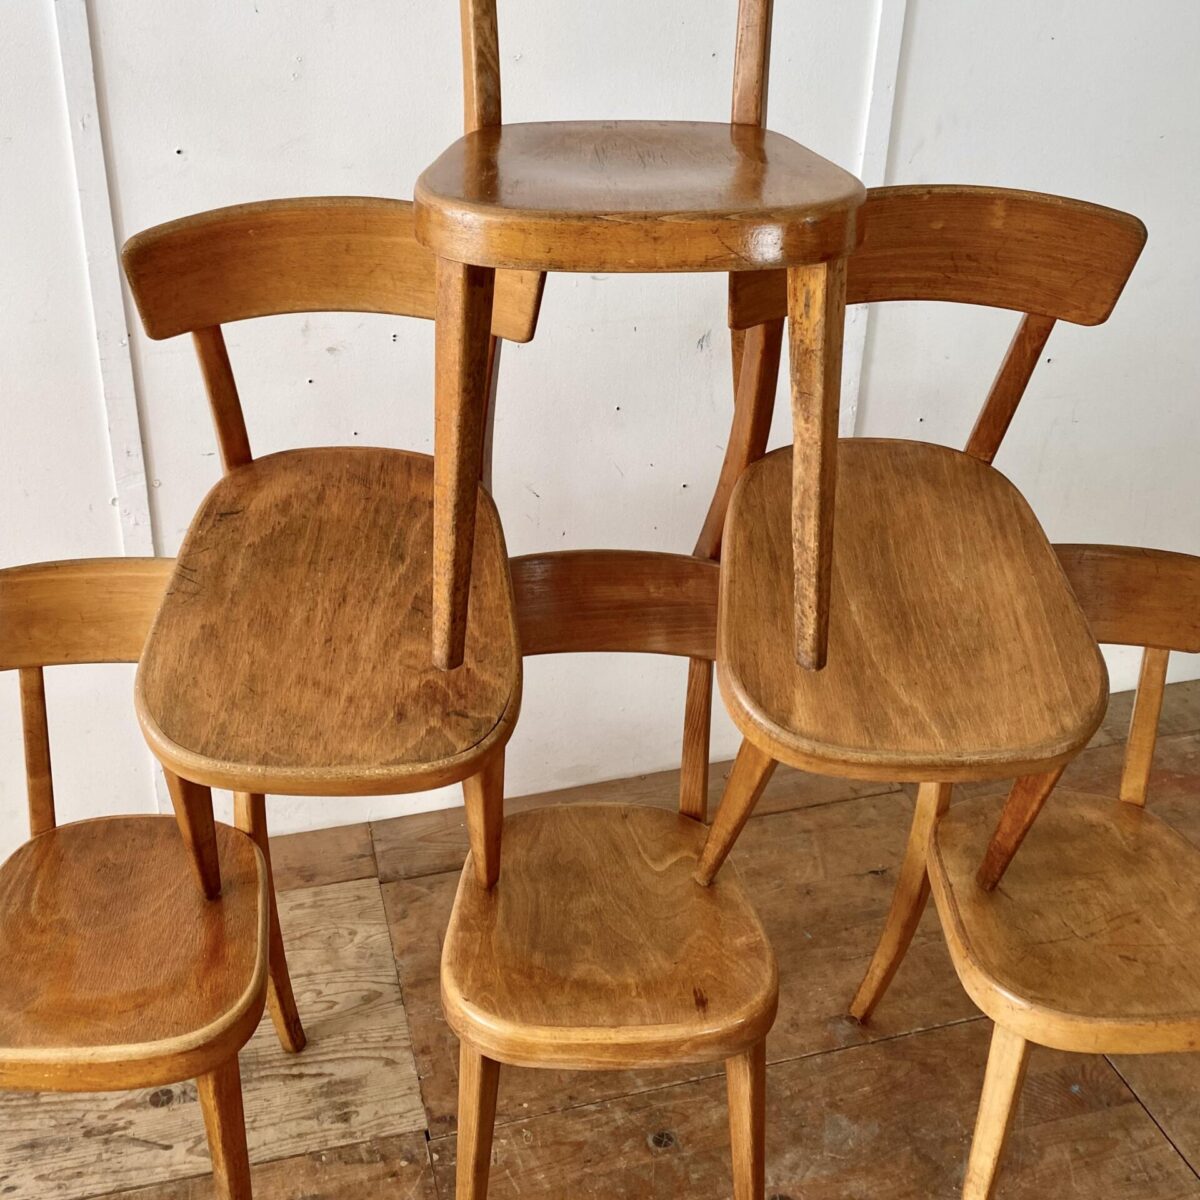 Deuxieme.shop 6er Set Beizenstühle von Tütsch Klingnau. Die Stühle sind in stabilem Zustand, mit dunkelbrauner Alterspatina. 